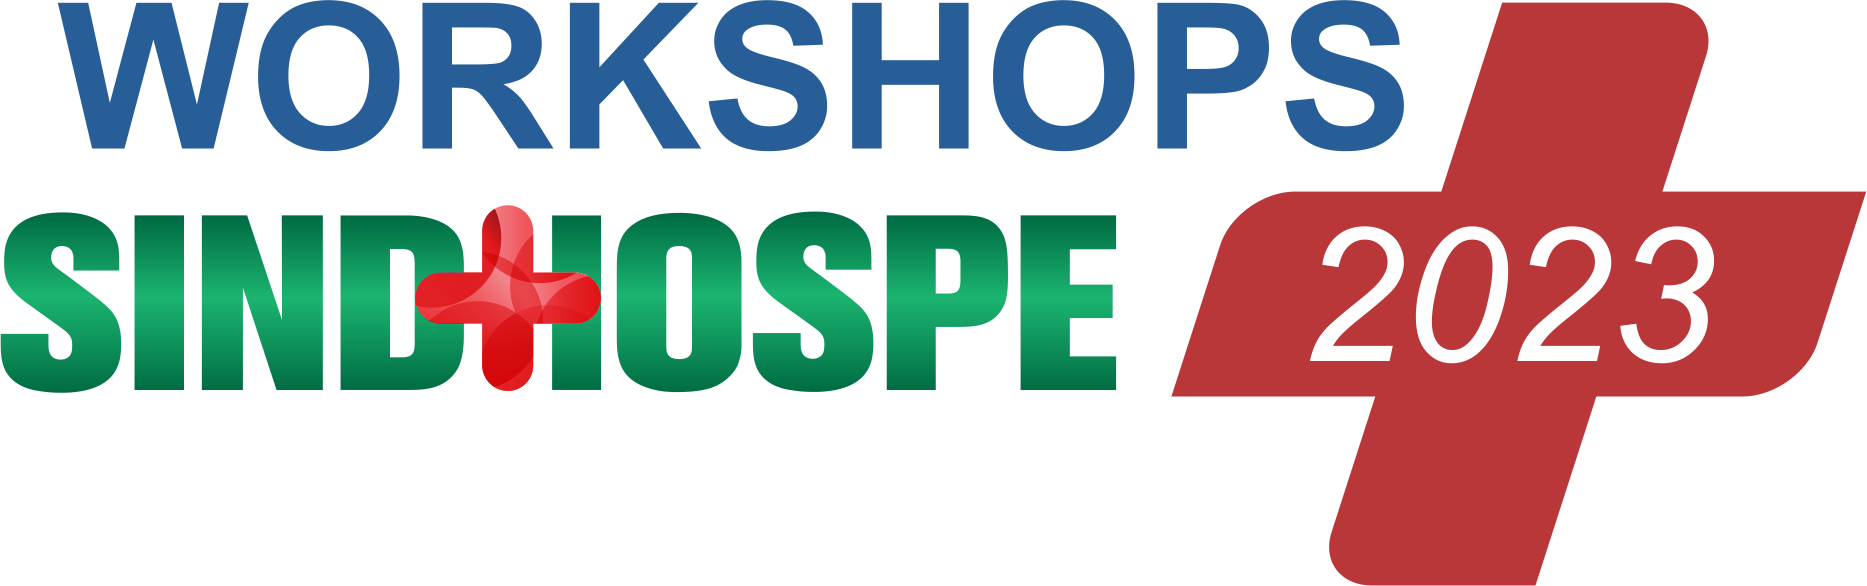 Workshops Sindhospe 2023